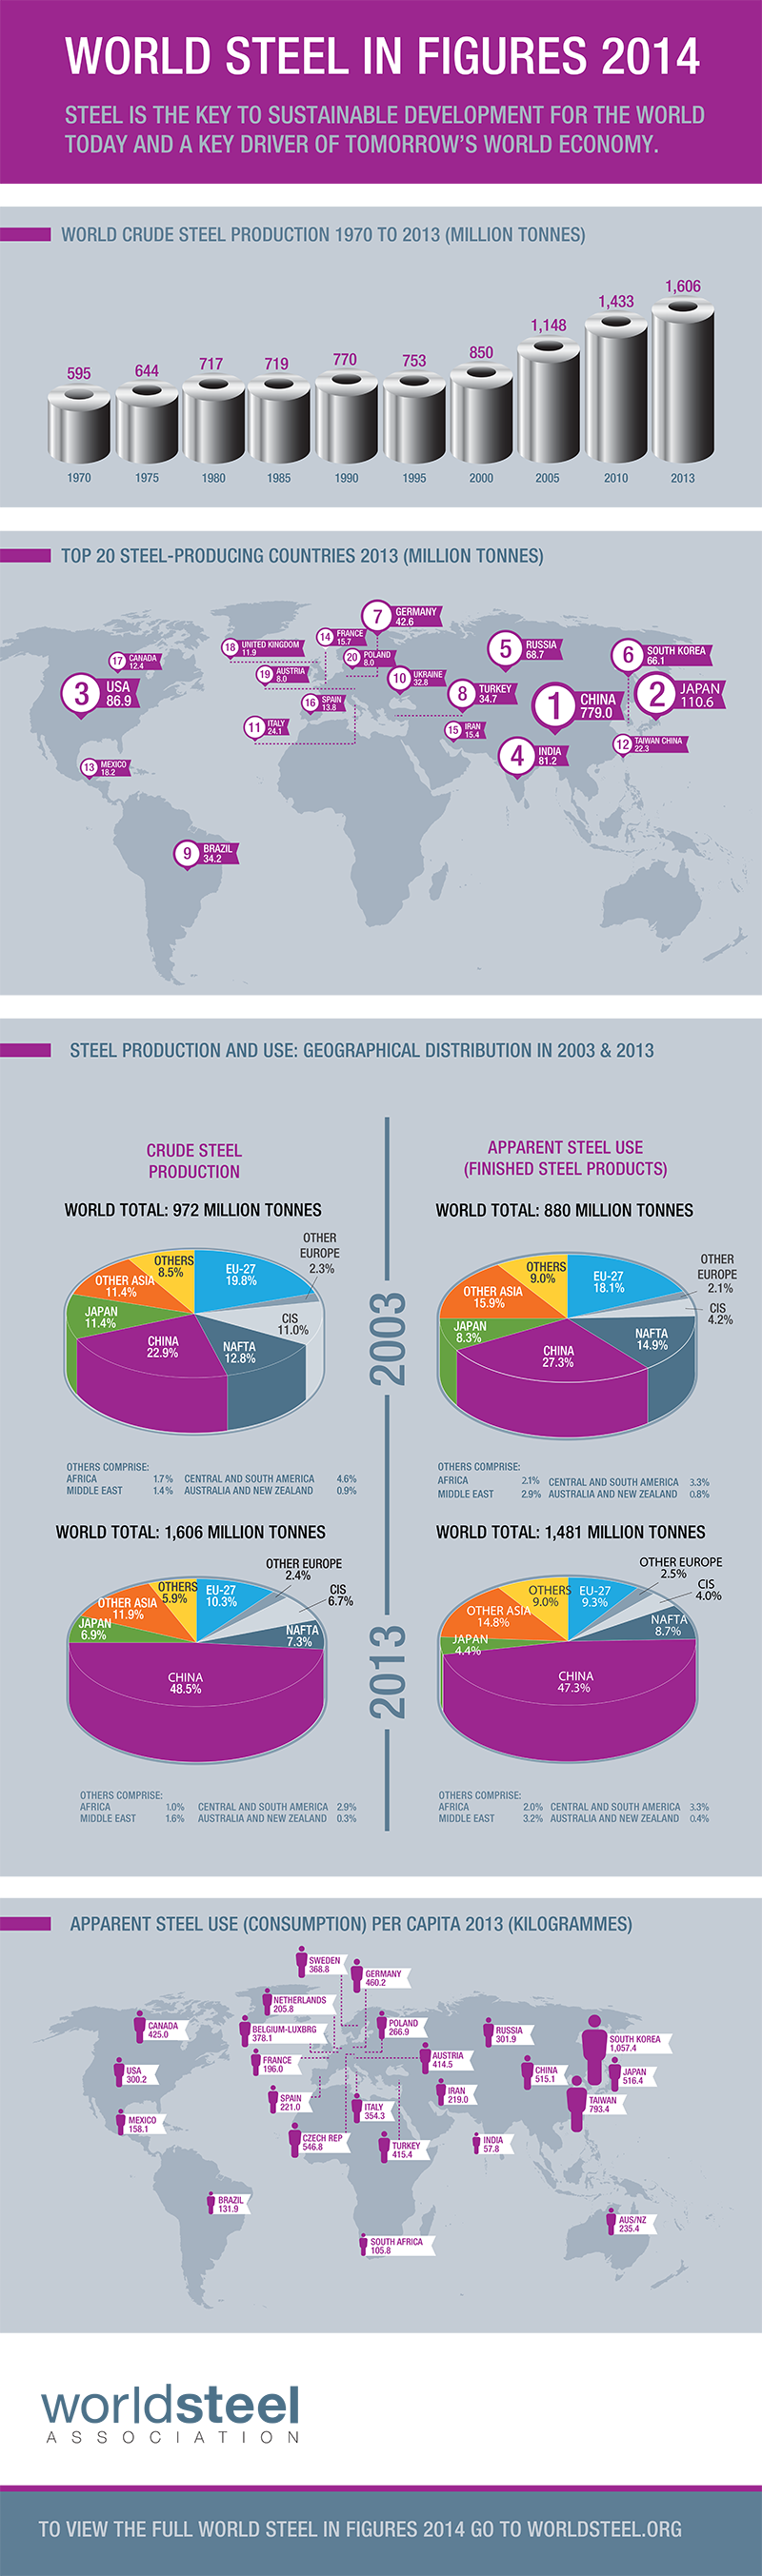 World Steel in Figures 2014